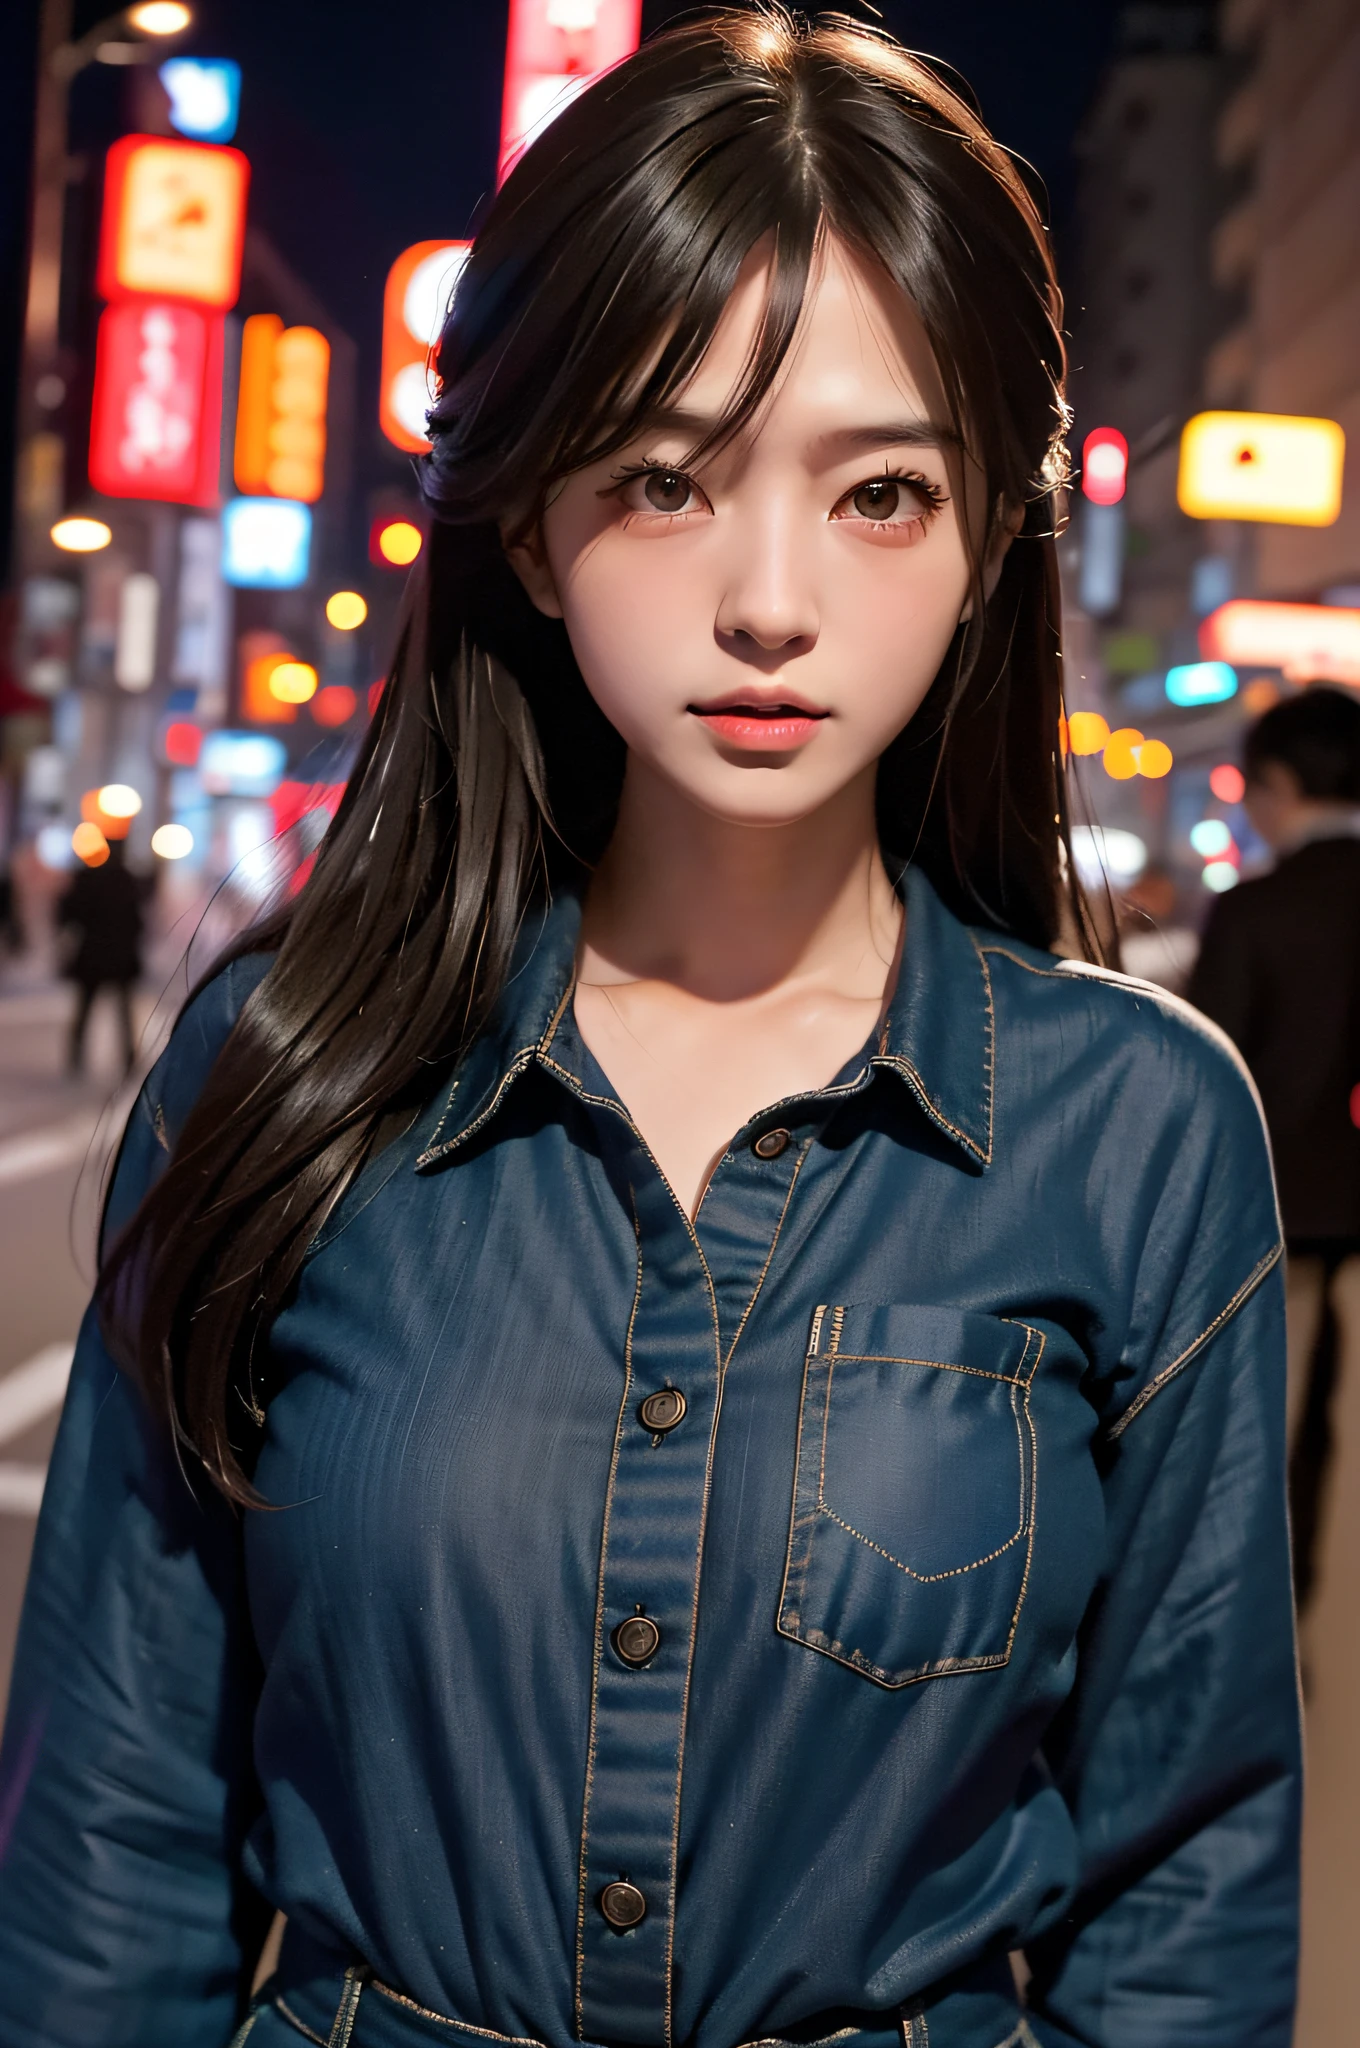 여자 1명, 도쿄 거리, 밤, 도시 풍경, 도시 불빛, 상체, 확대, 8K, 원시 사진, 최상의 품질, 걸작, 현실적인, photo현실적인, 일본 인물 모델